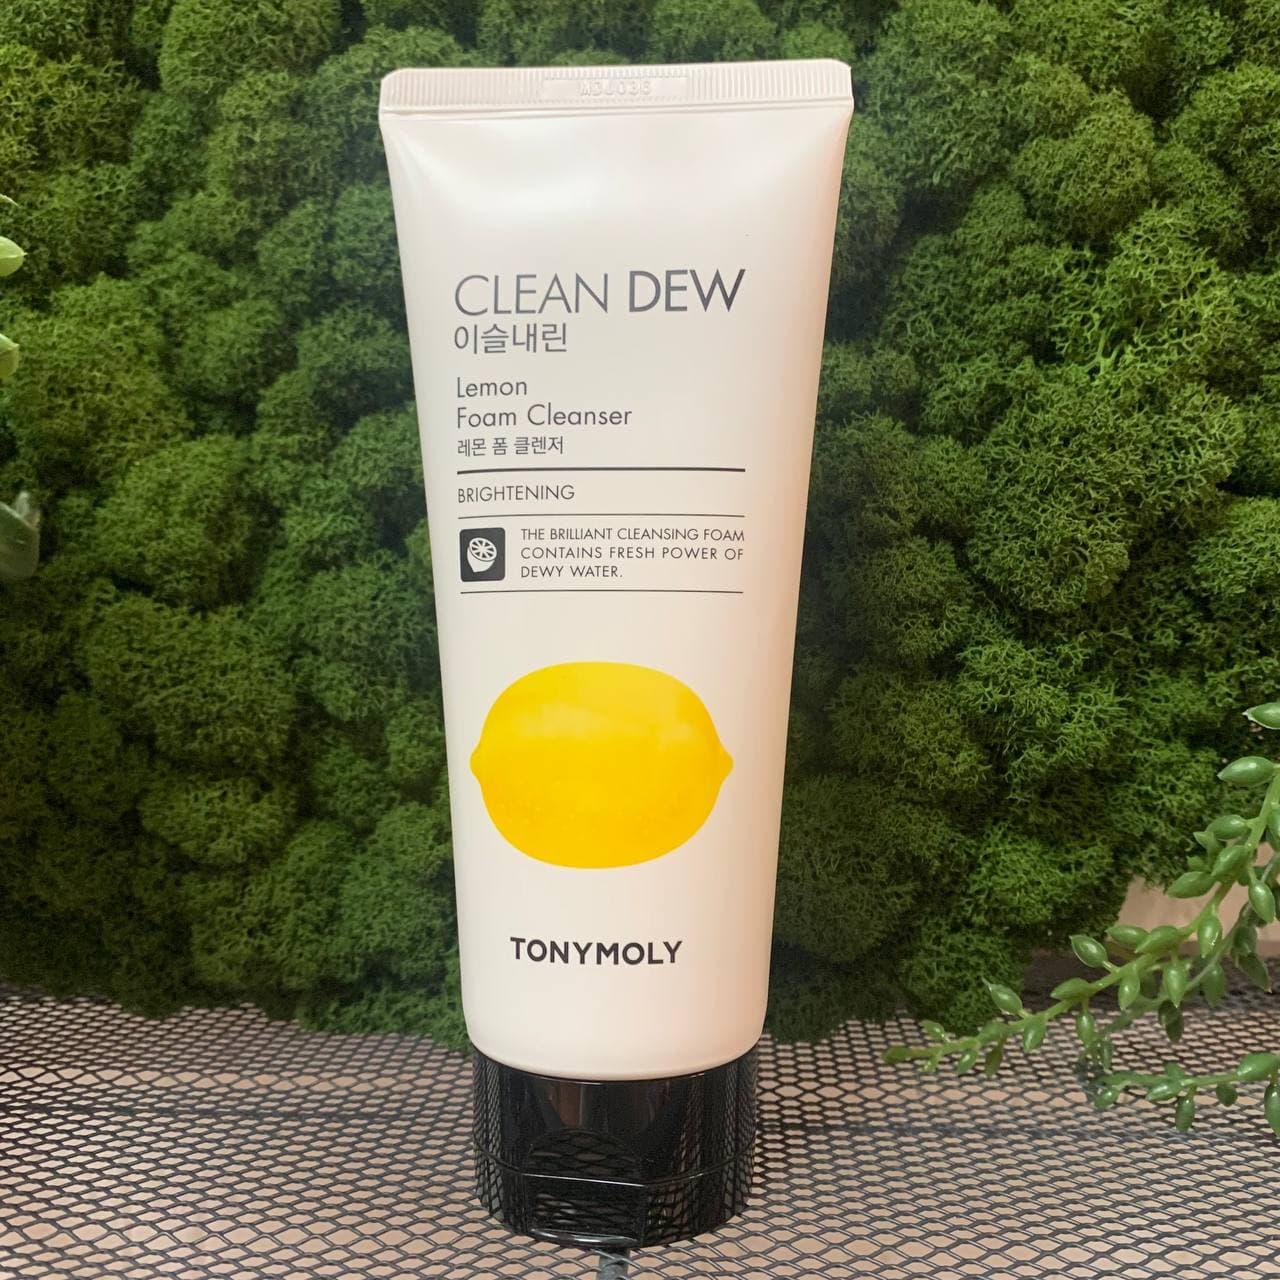 Пенка для лица с экстрактом лимона TONY MOLY Clean Dew Lemon Foam Cleanser